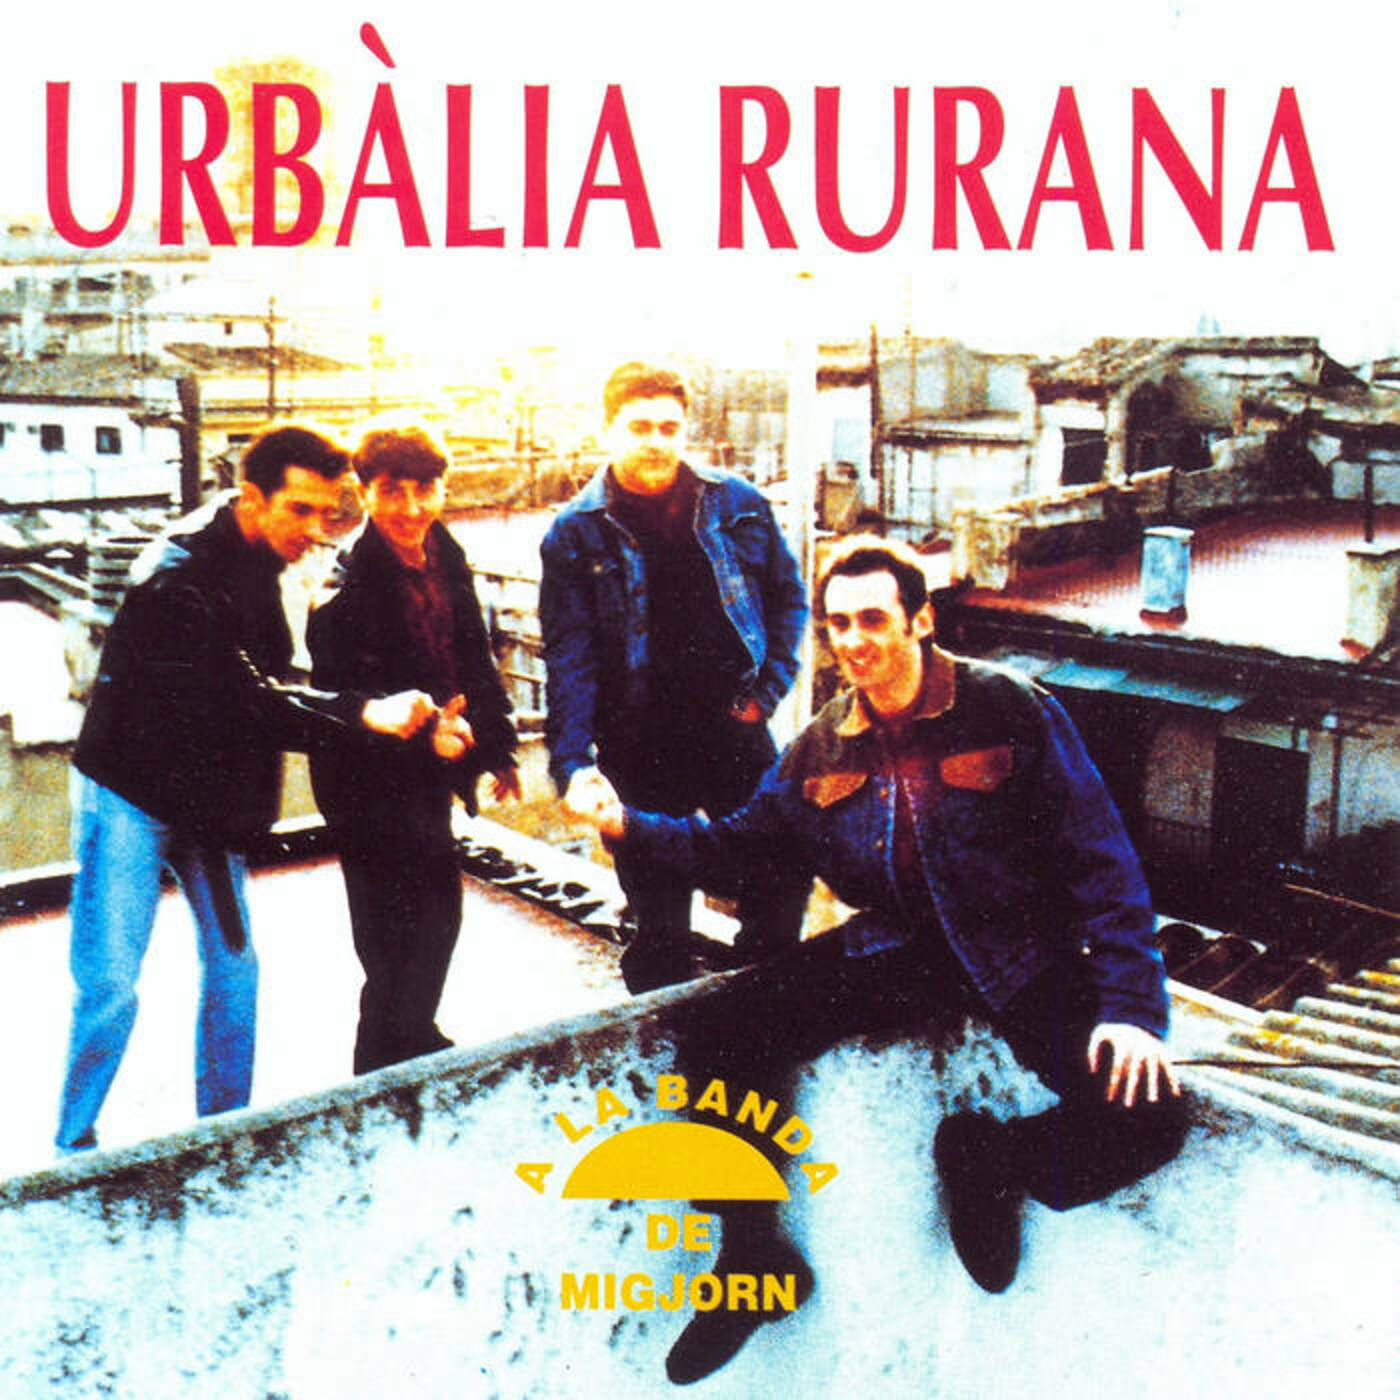 Urbàlia Rurana - A la banda de migjorn  | musica en valencià